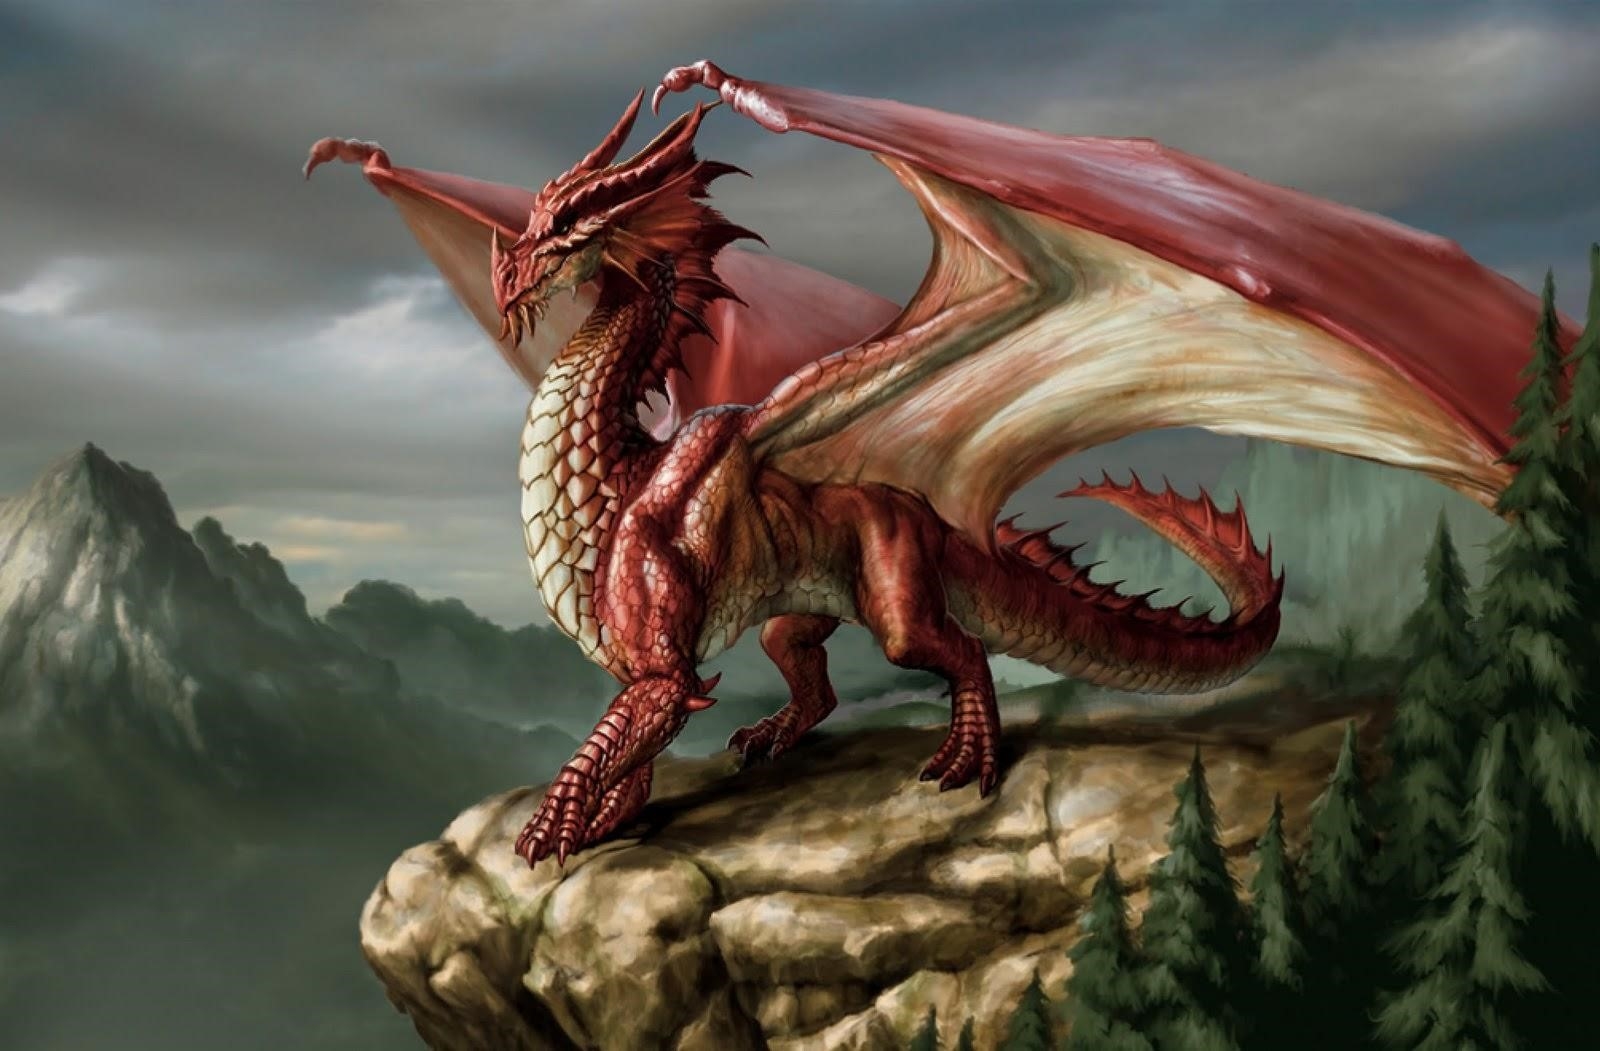 Mơ thấy rồng đỏ có thể mang ý nghĩa của sự lợi hại, quyền lực và sự bảo vệ. Rồng đỏ trong mơ cũng có thể đại diện cho sự nhiệt huyết, sự mạo hiểm và sự may mắn.